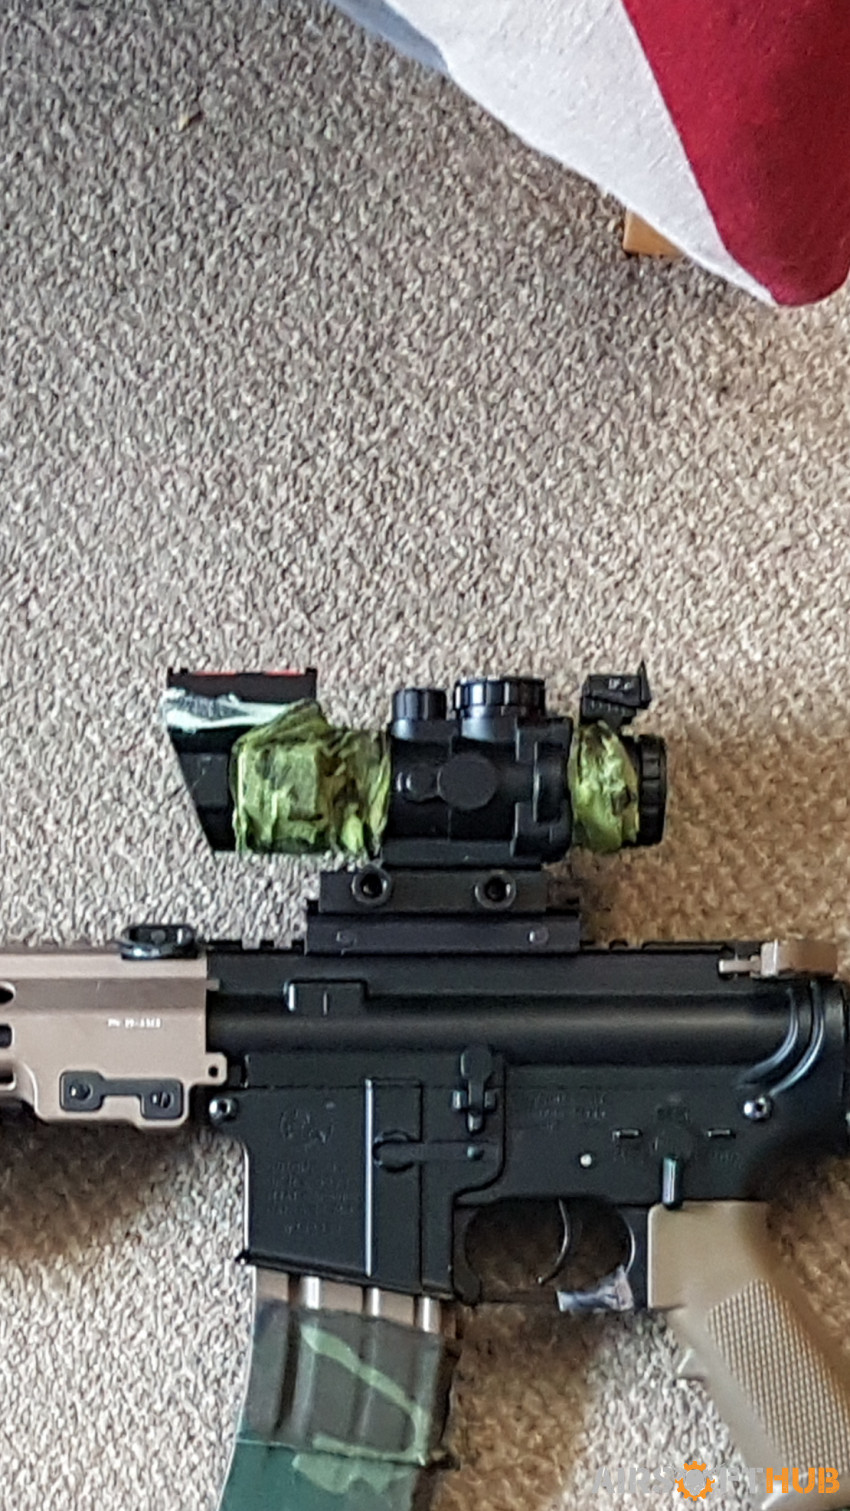 4x32 rhino scope - Used airsoft equipment